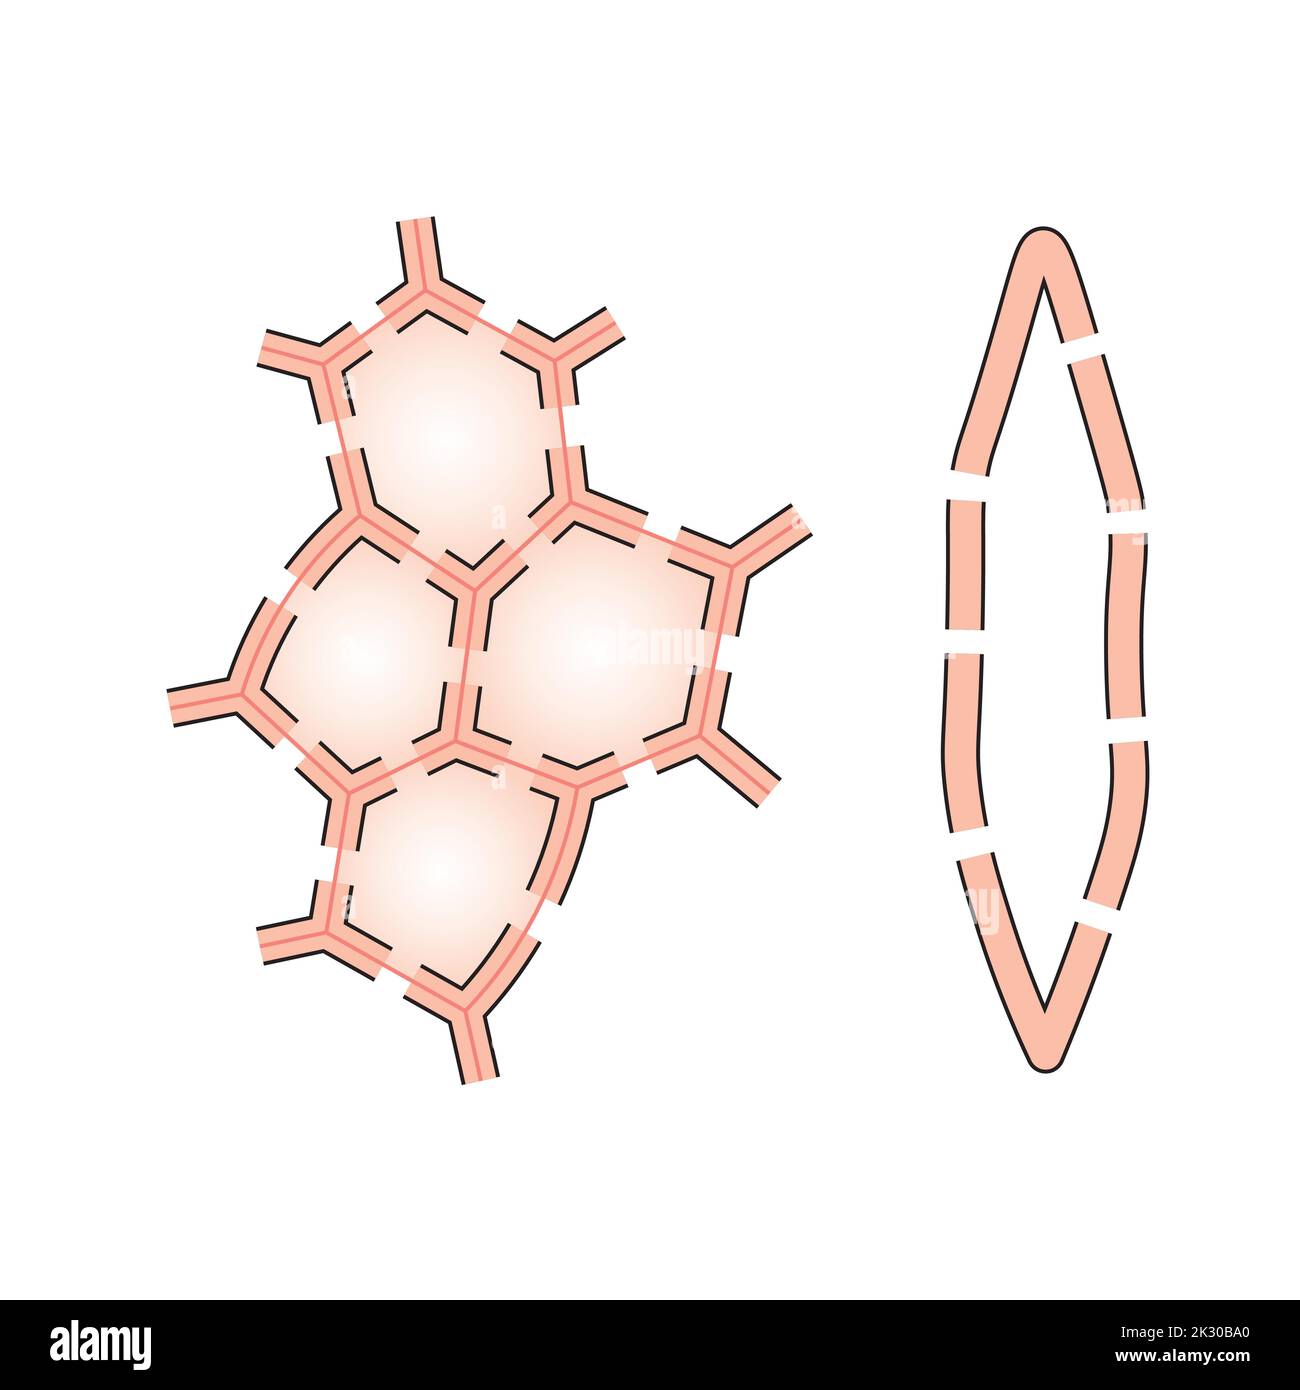 Conception scientifique de la structure sclérenchyme. Type de cellule qui a des parois lignifiées. Symboles colorés. Illustration vectorielle. Illustration de Vecteur